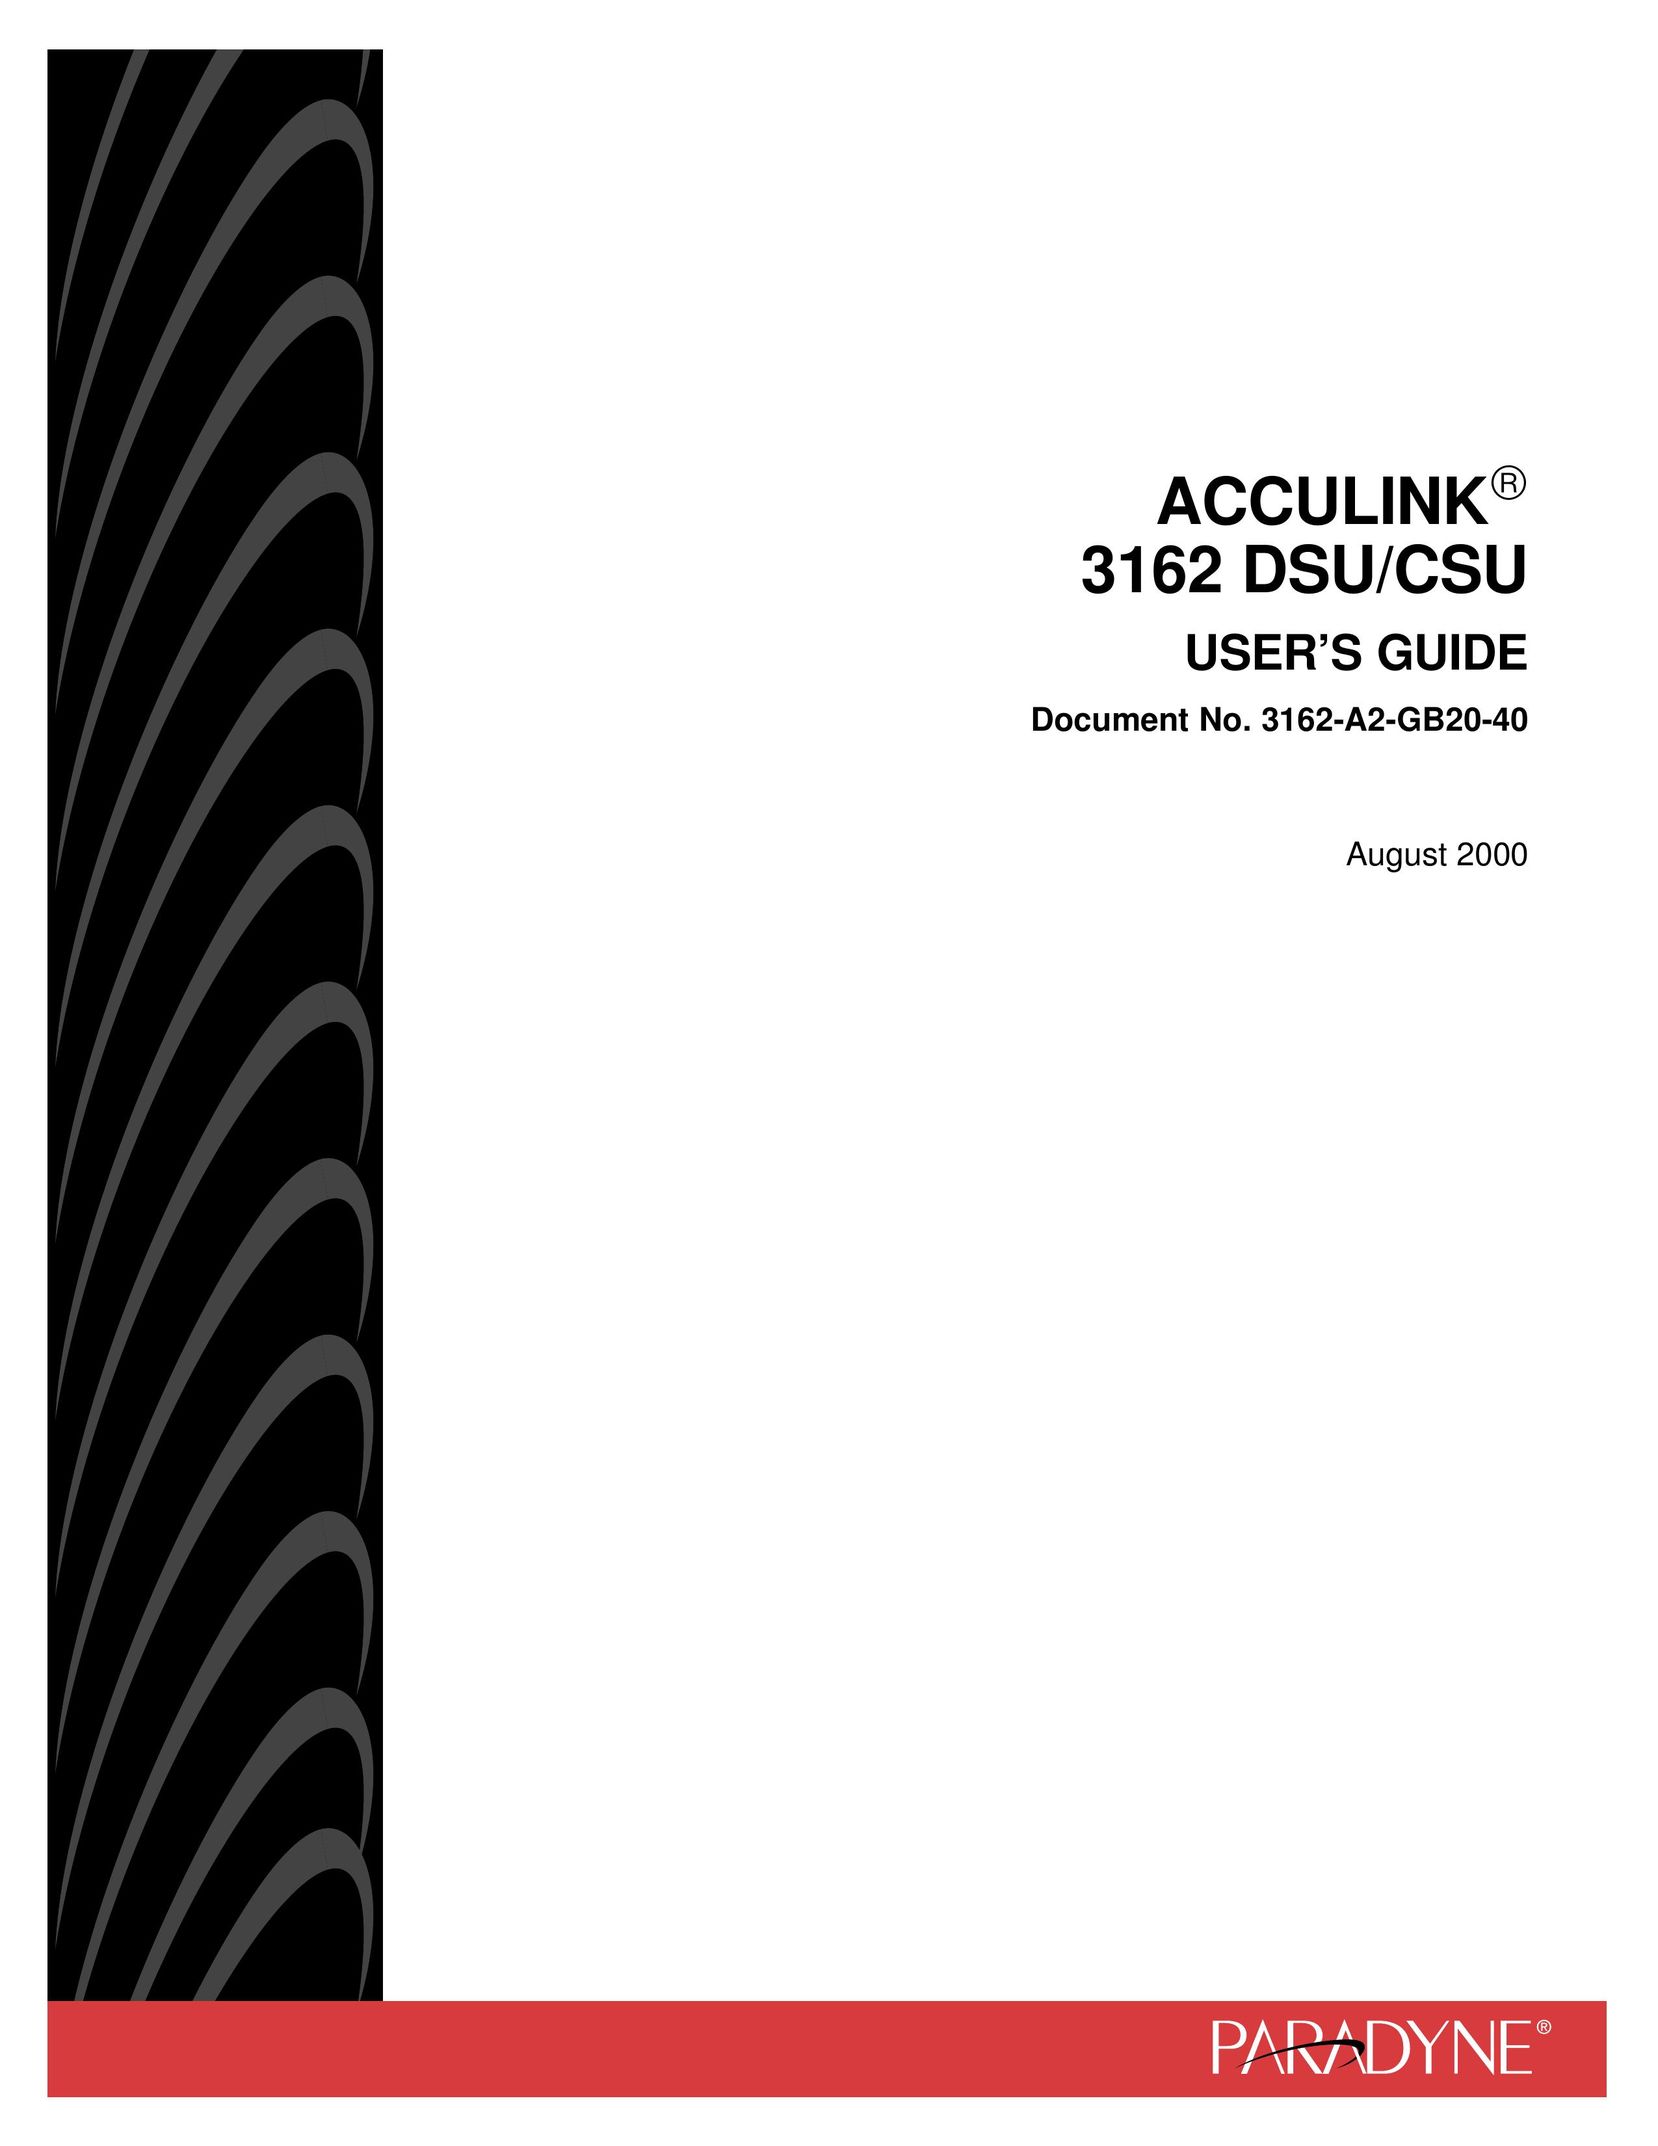 HP (Hewlett-Packard) 3162 Network Card User Manual